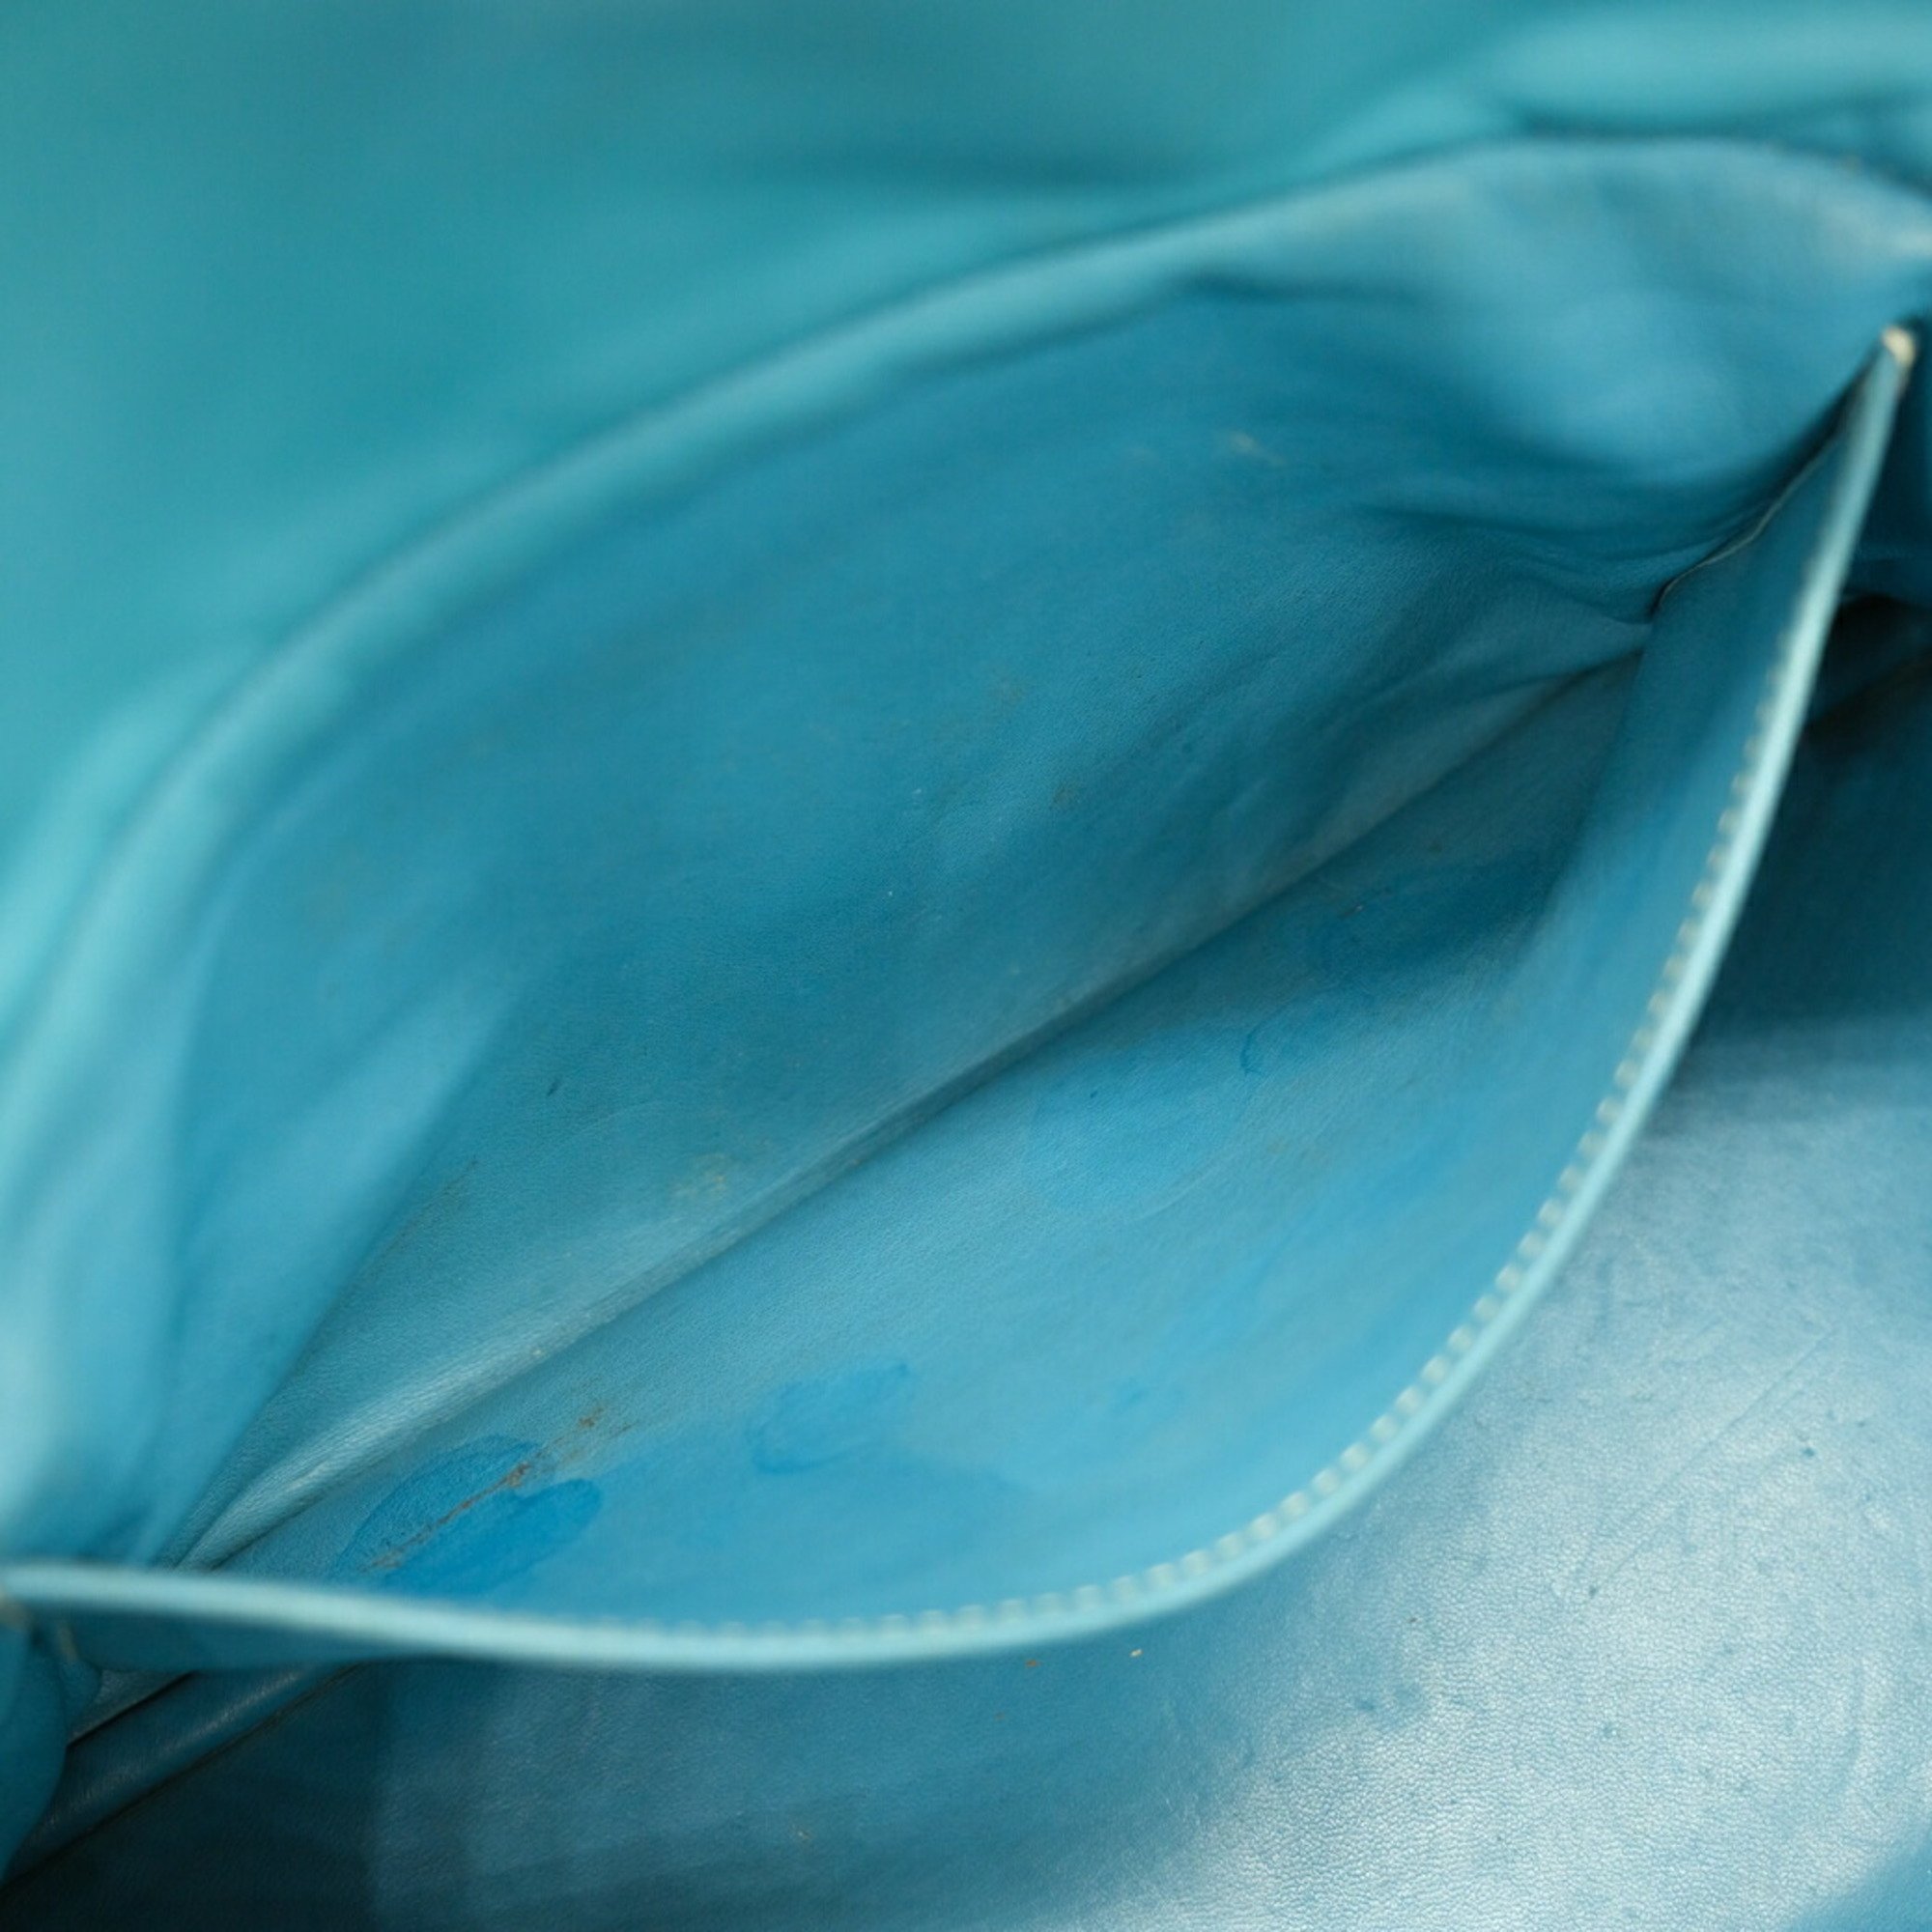 HERMES Bolide 31 handbag shoulder bag in Taurillon Clemence leather and blue jean